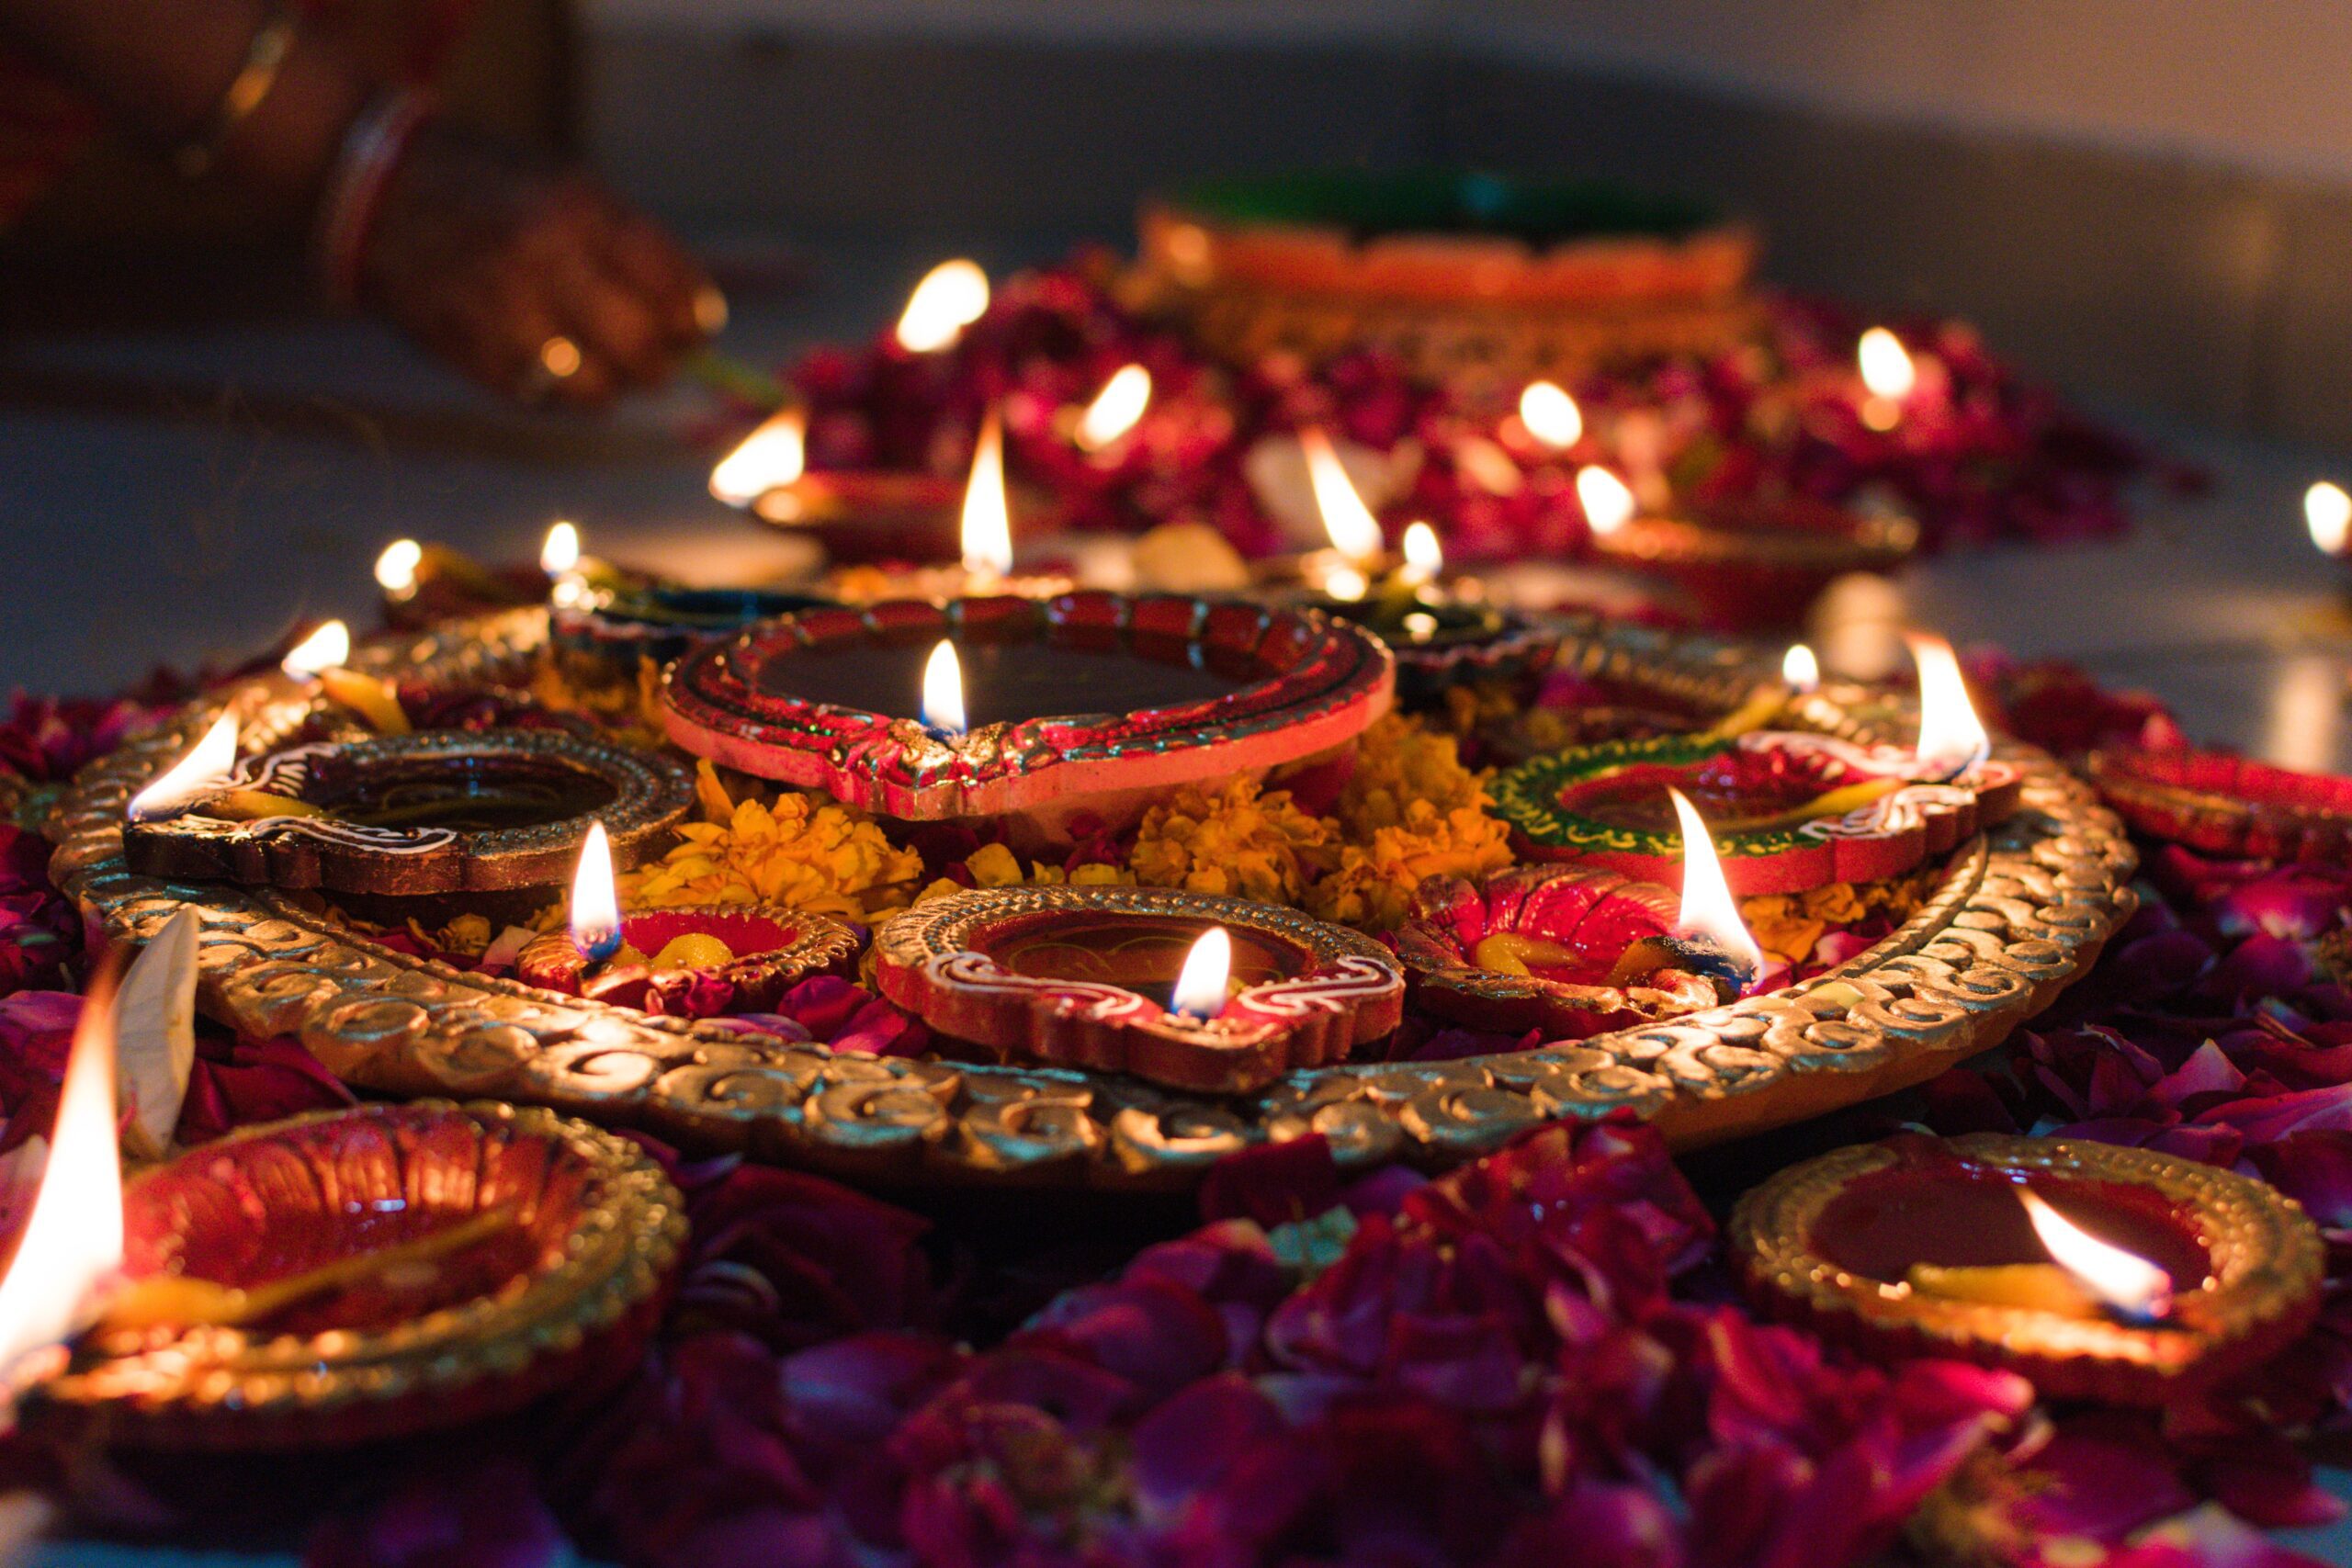 Bougies Diwali Allume Des Bougies Indiennes Traditionnelles Fleurs Colorées